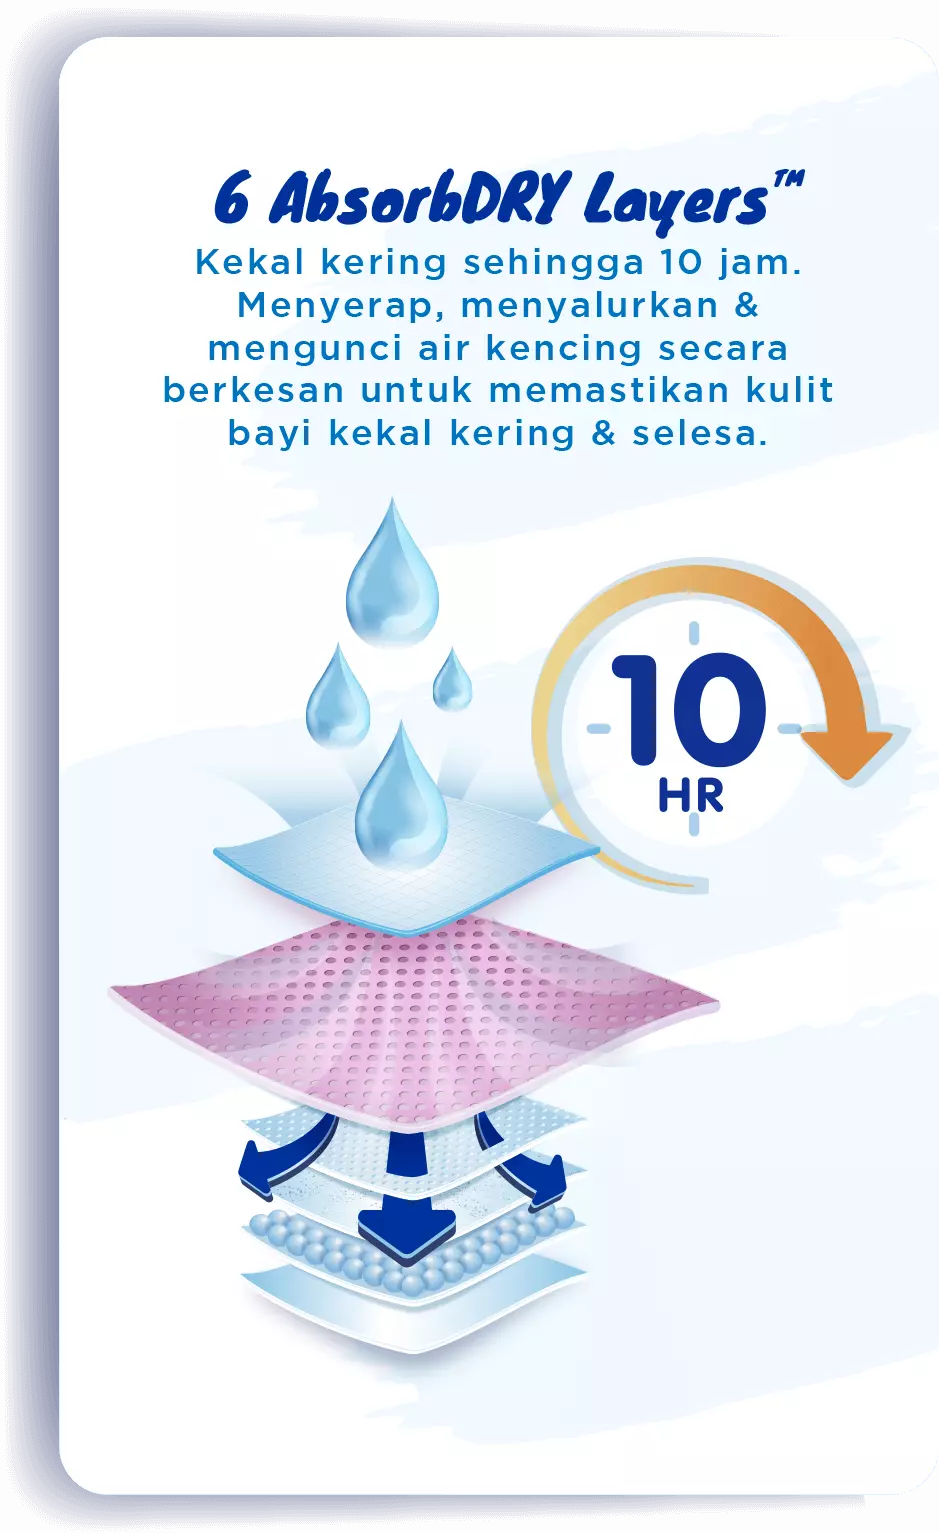 6 Absorbs Dry Layers™: Kekal kering sehingga 10 jam. Menyerap, menyalurkan & mengunci air kencing secara berkesan untuk memastikan kulit bayi kekal kering & selesa.